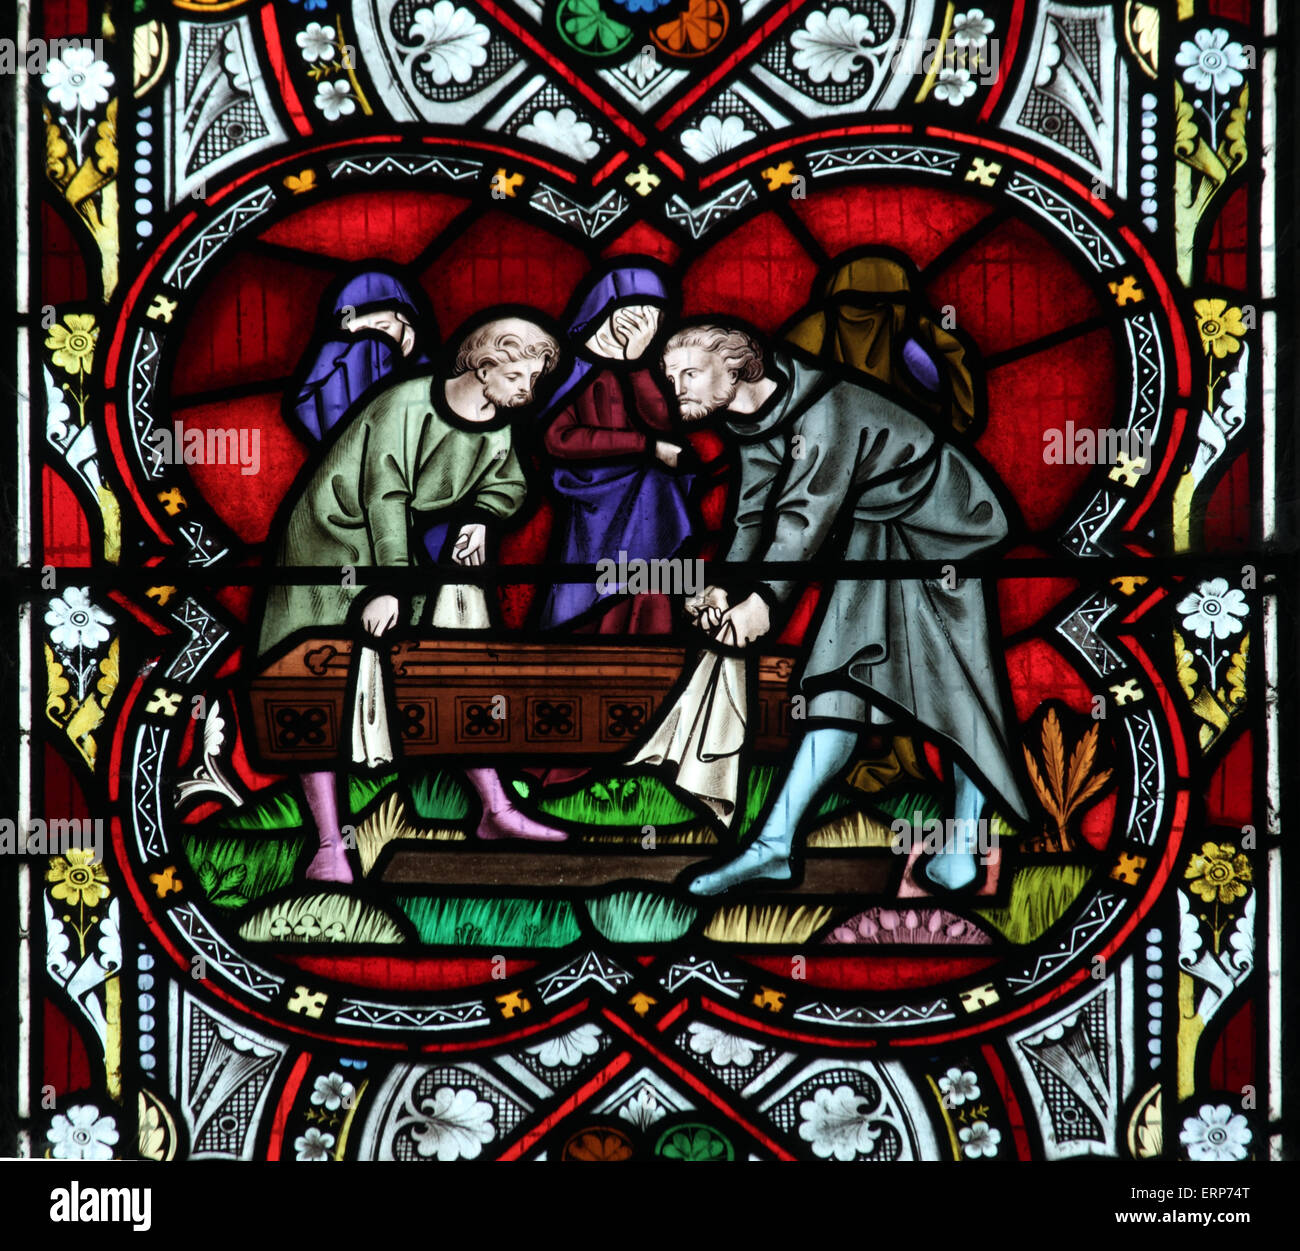 Ein Buntglasfenster, das einen Akt der korporalen Barmherzigkeit darstellt - Bury the Dead (Tobit 1) Stockfoto